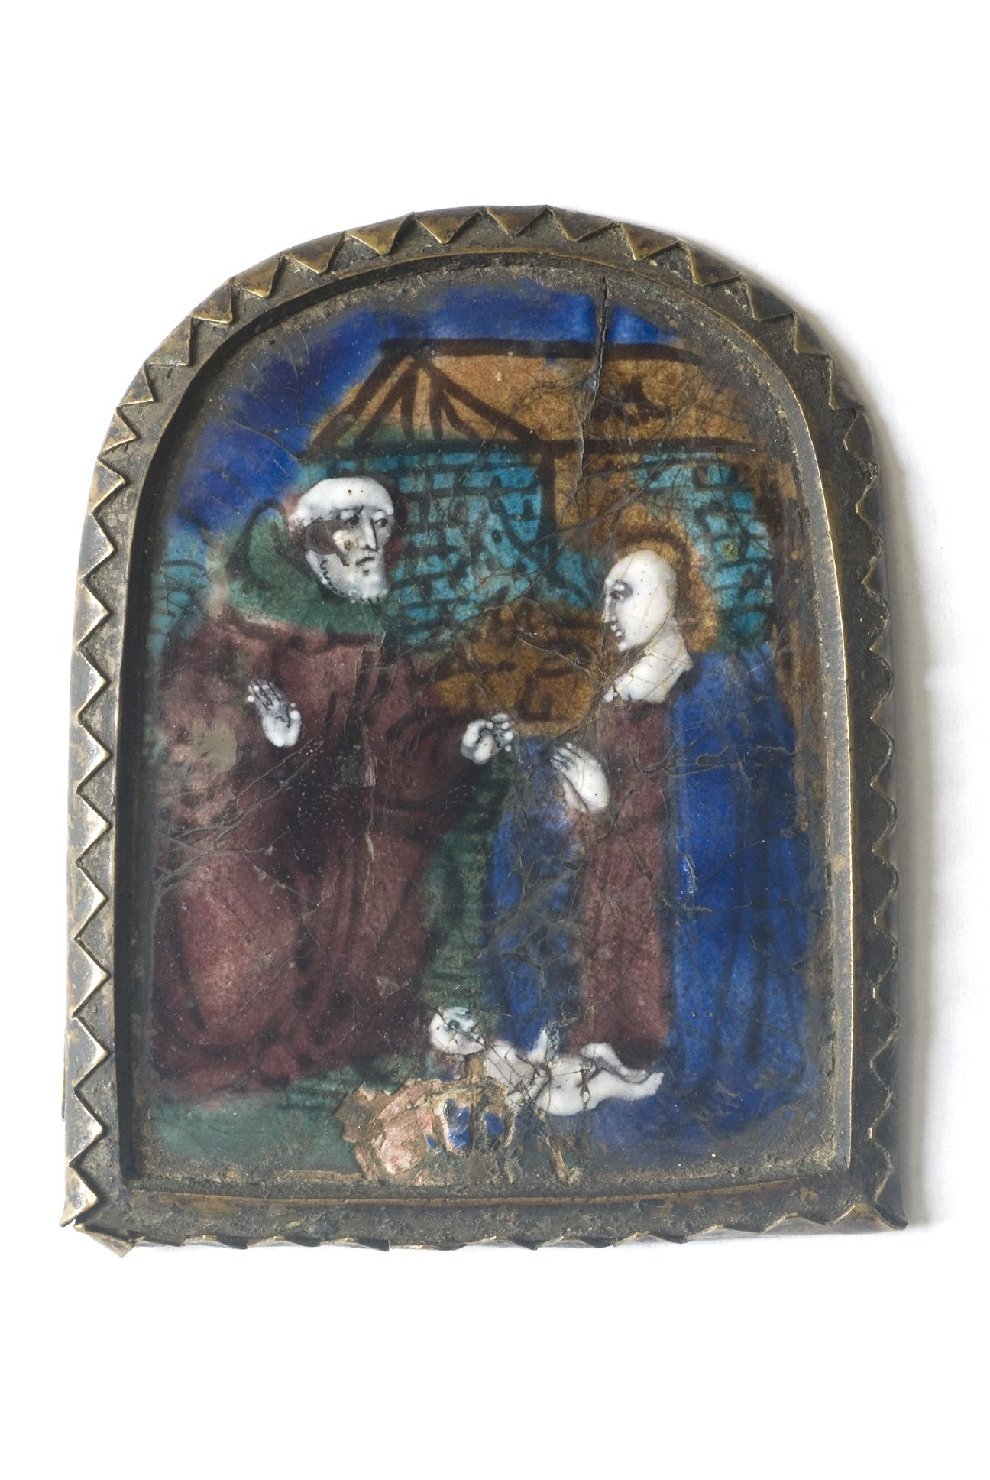 natività di Gesù (pace - a tavoletta) - manifattura di Limoges (secc. XV-XVI)